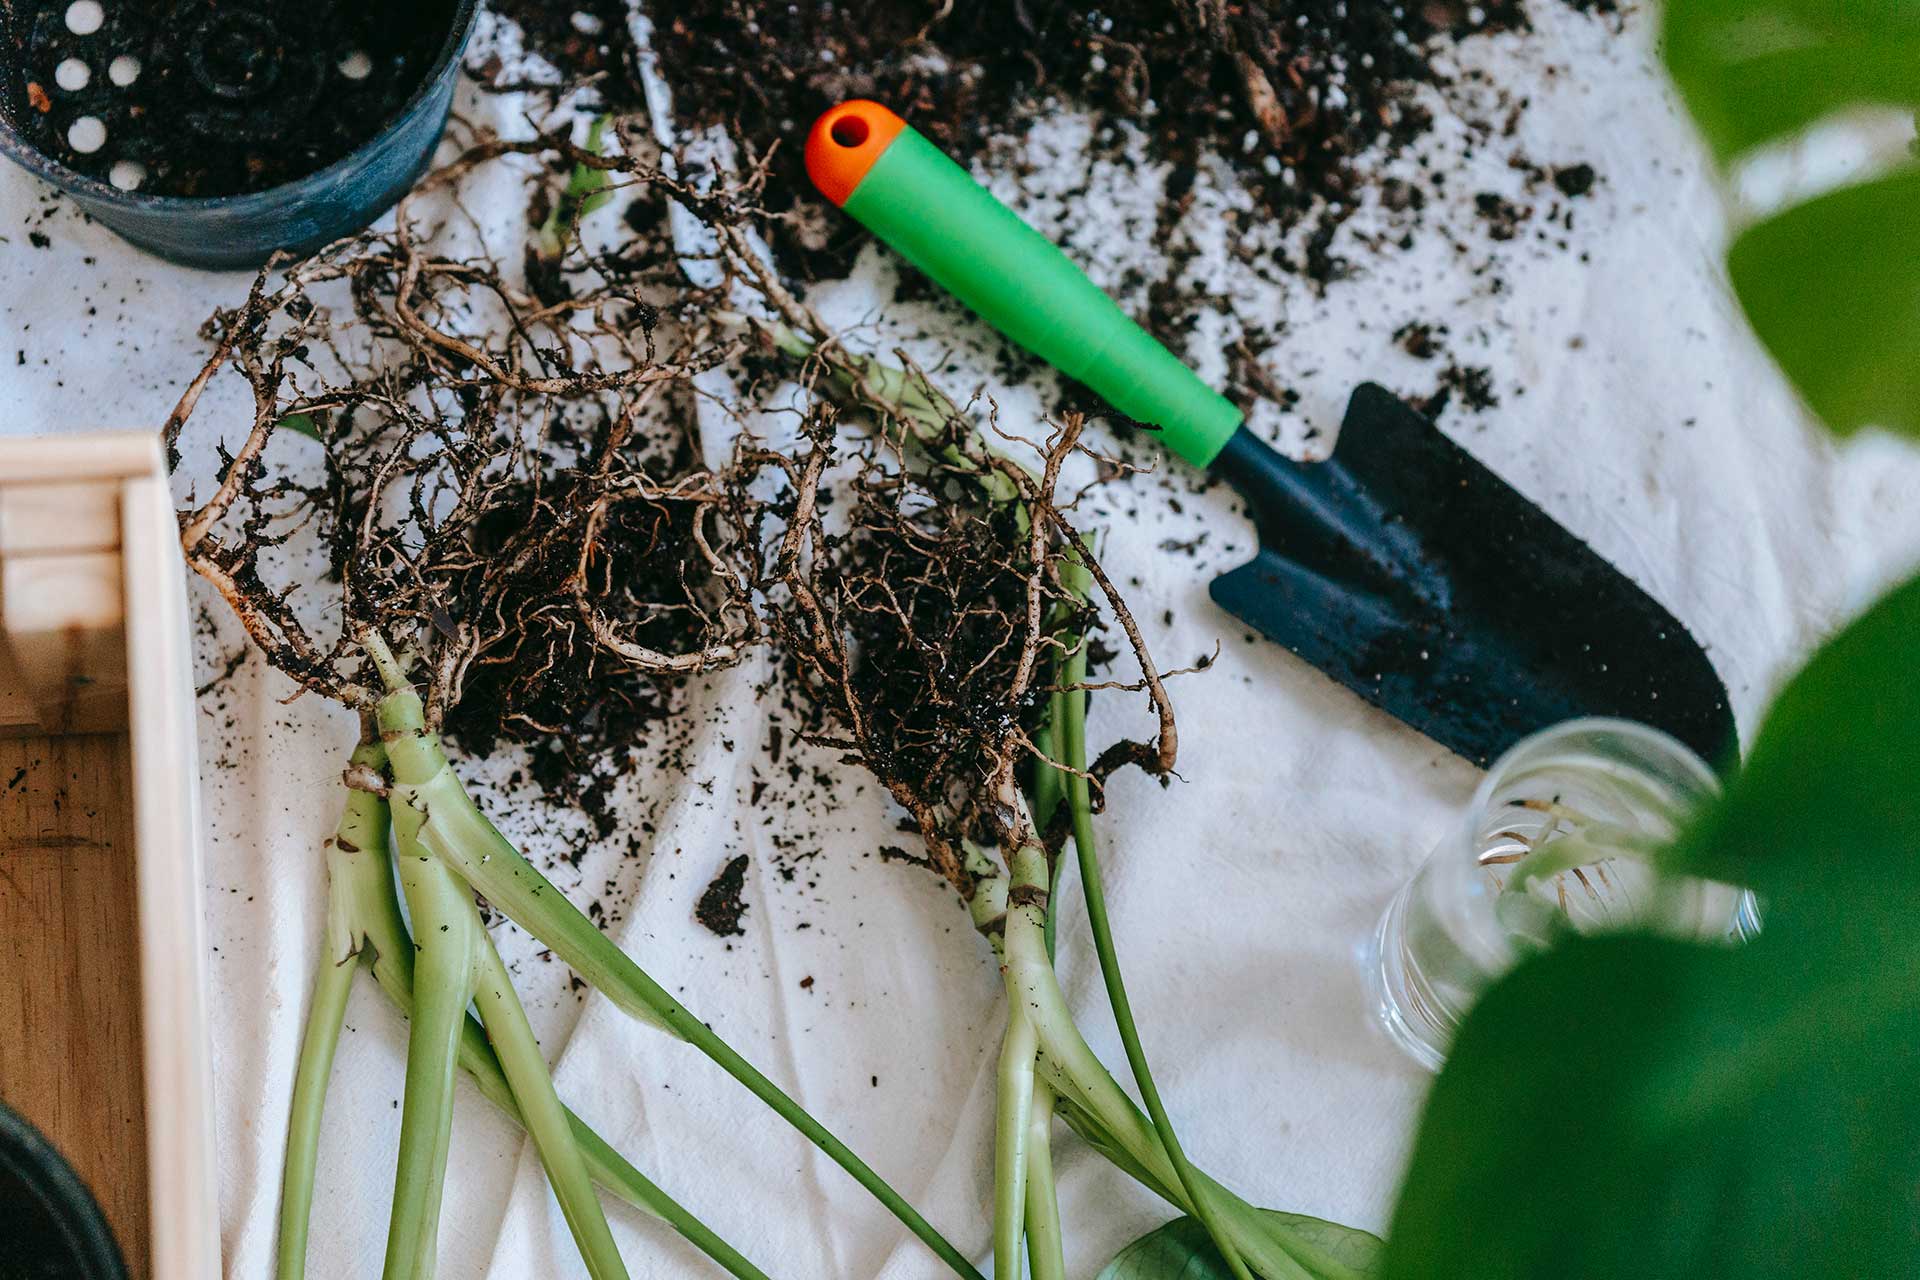 Jardinage : les outils à main qu'il faut avoir - Au coeur des sols